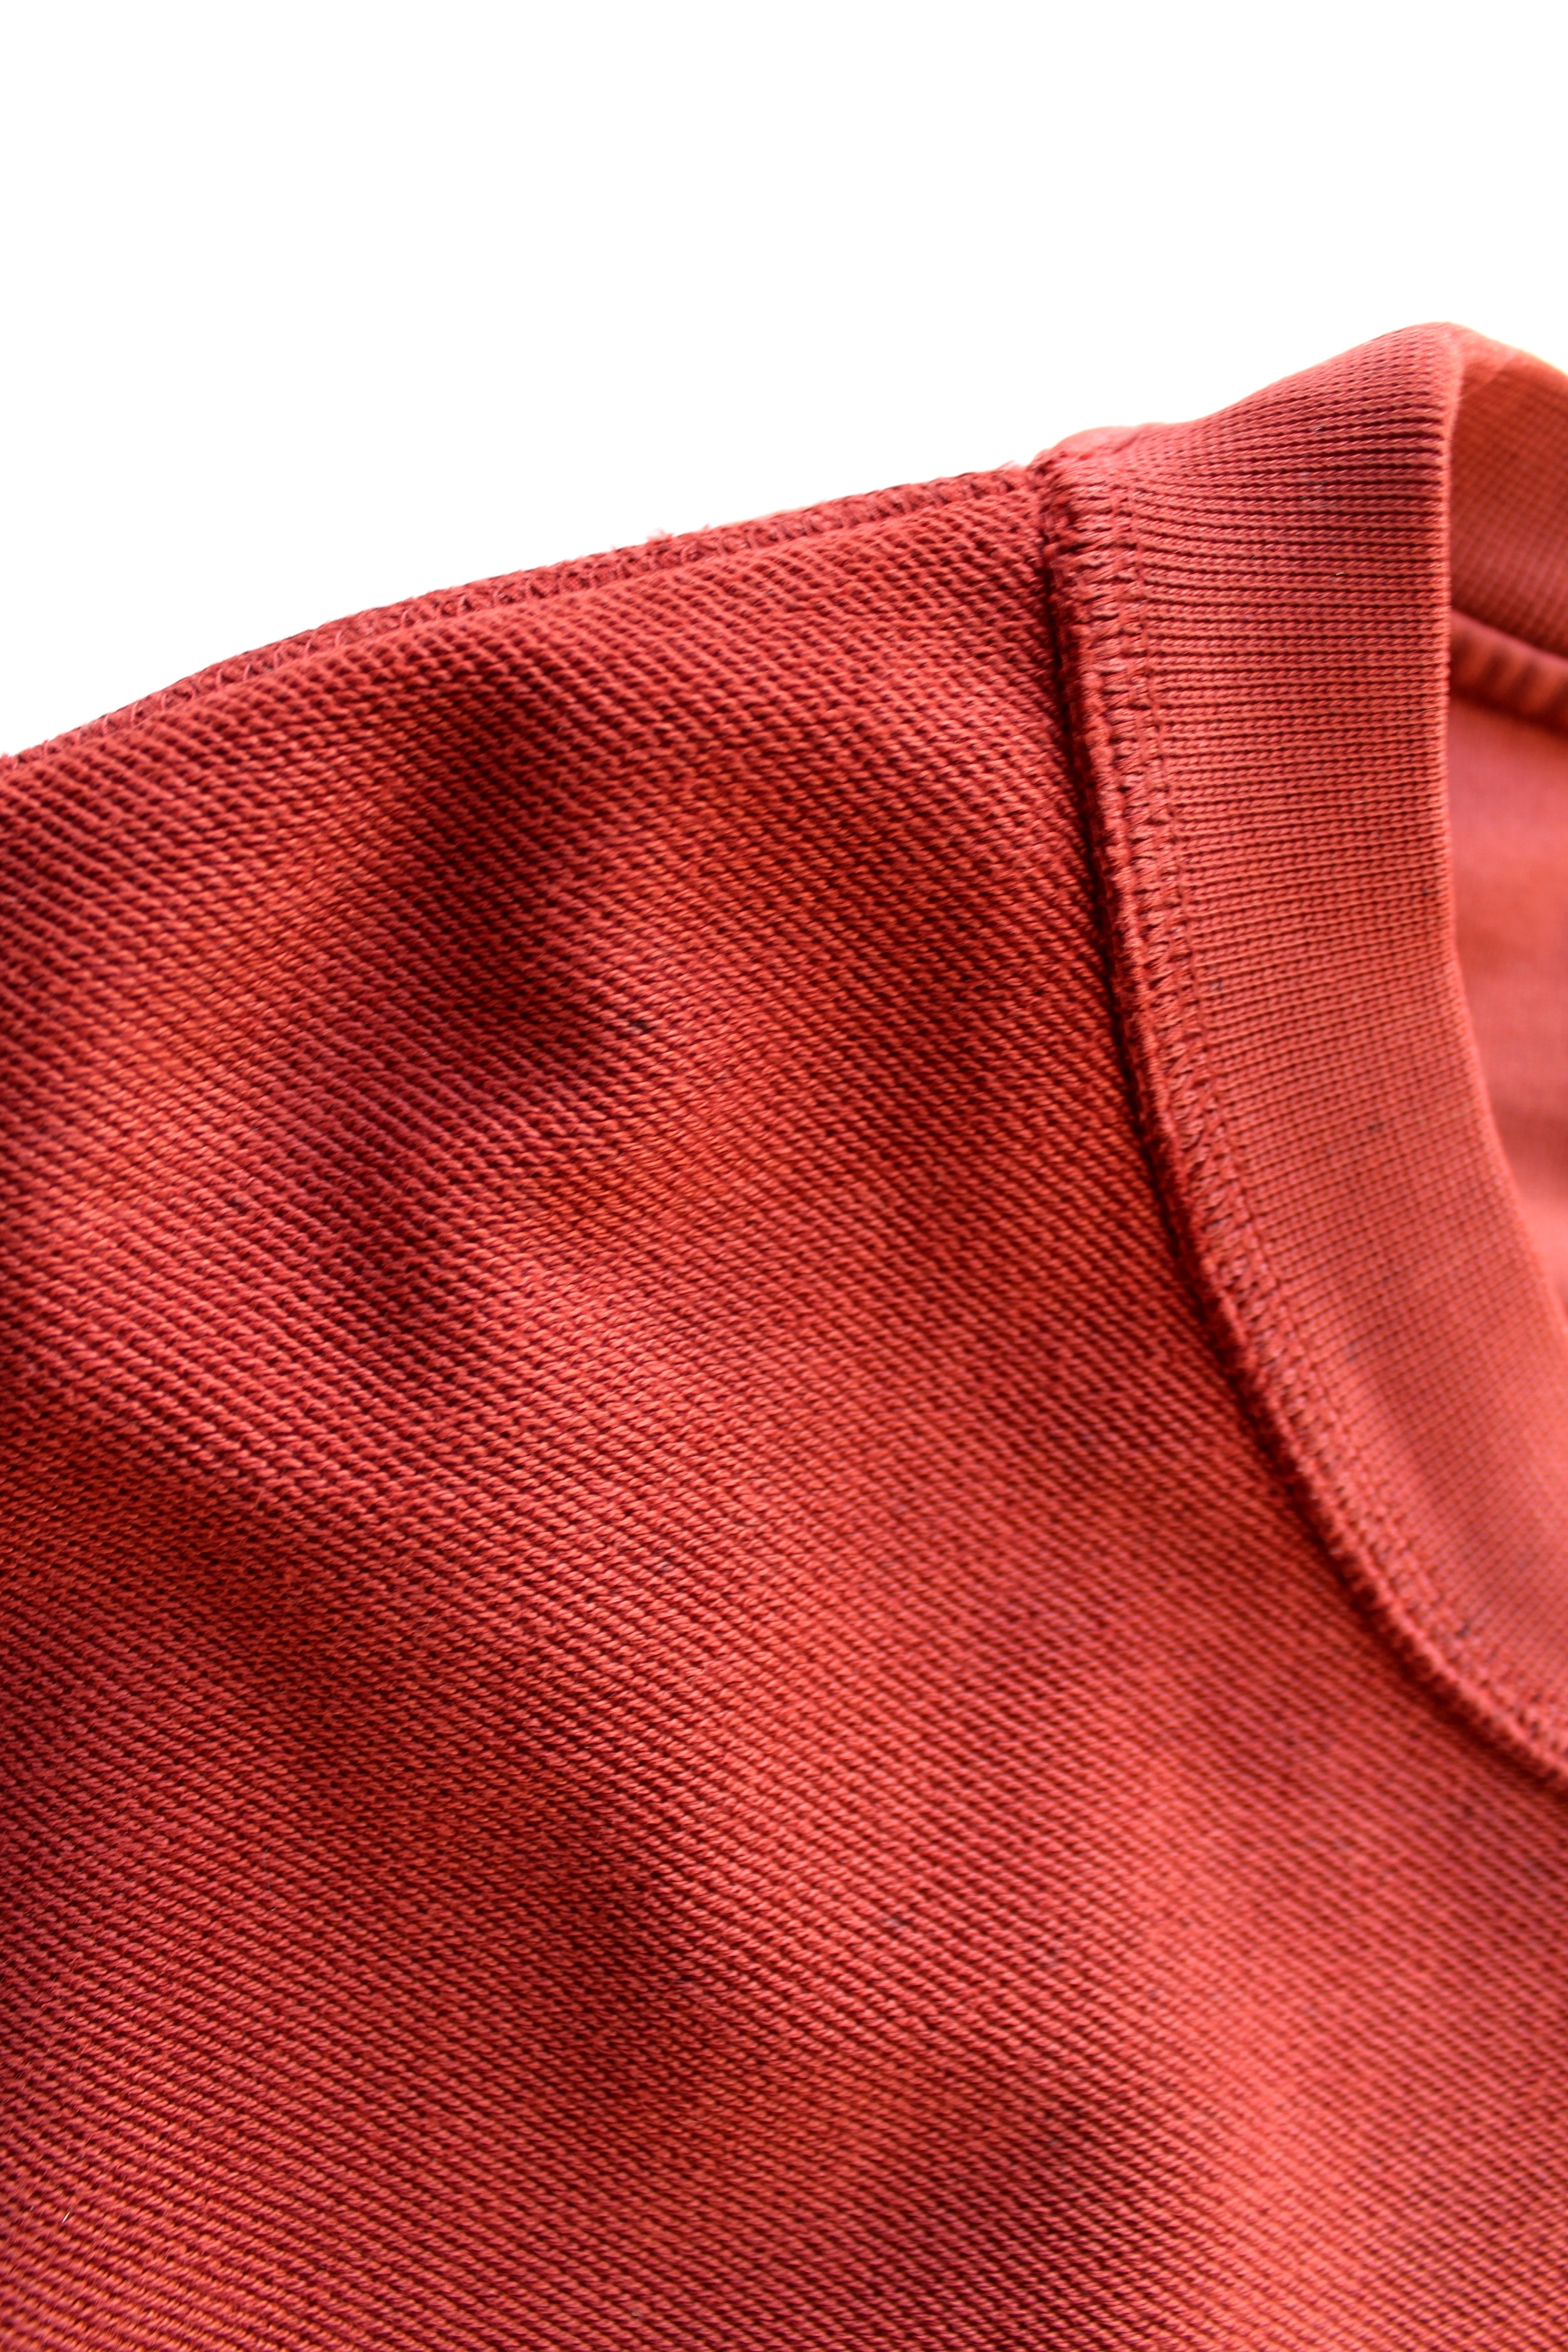 oversized raw-edge sweatshirt - cinnabar red - Commun des Mortels